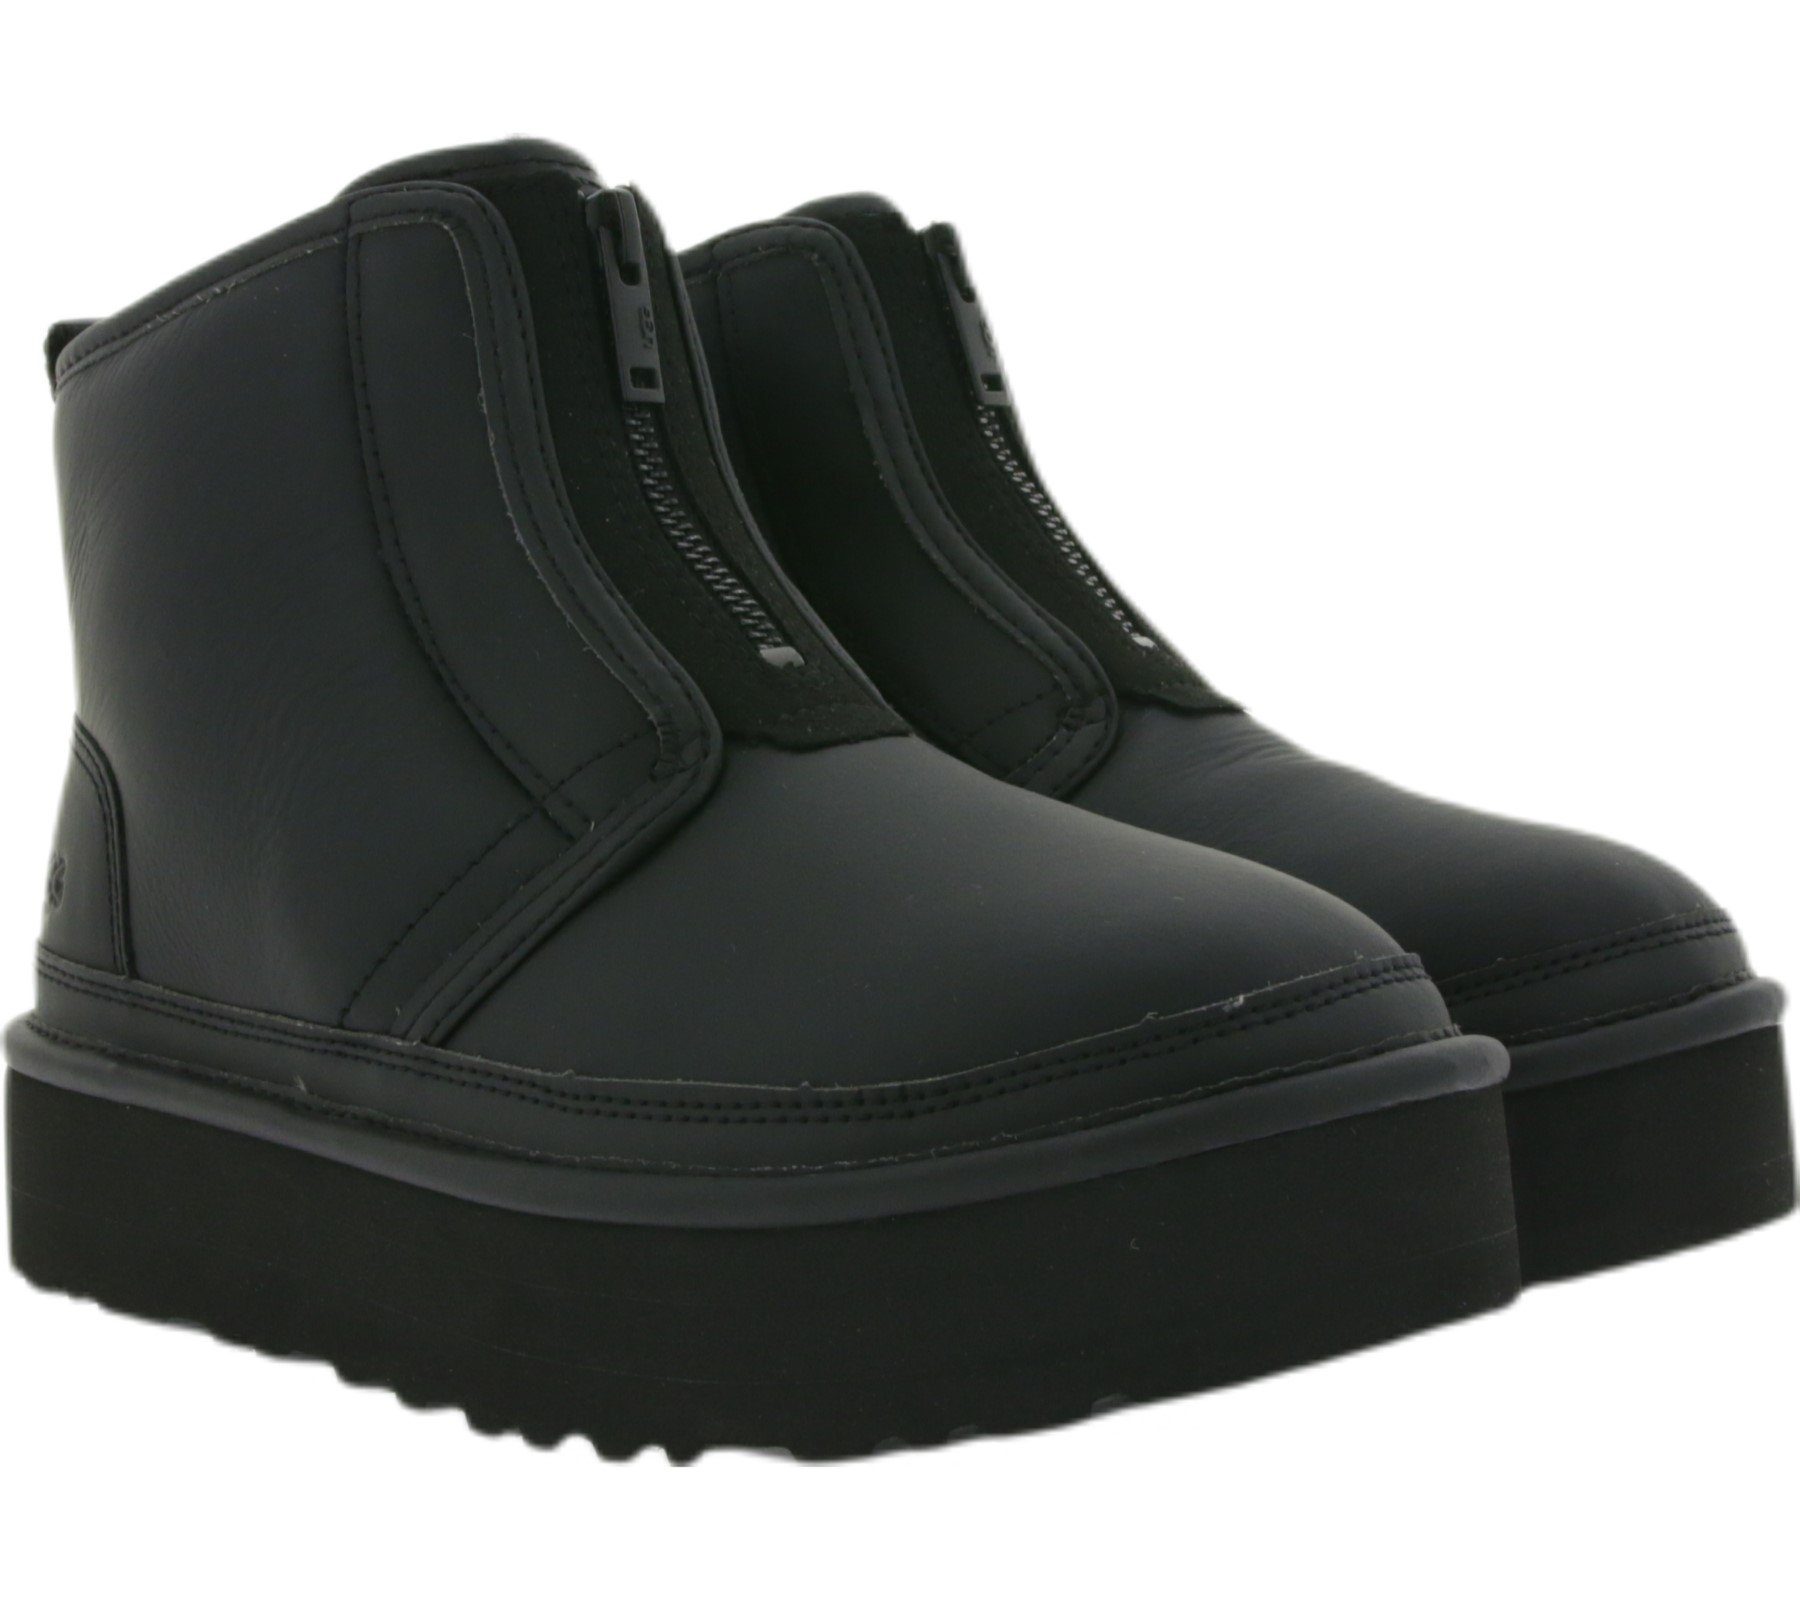 UGG UGG Australia Damen Plateau-Boots Stiefel W Neumel Platform Zip Winter- Schuhe Schwarz Stiefel